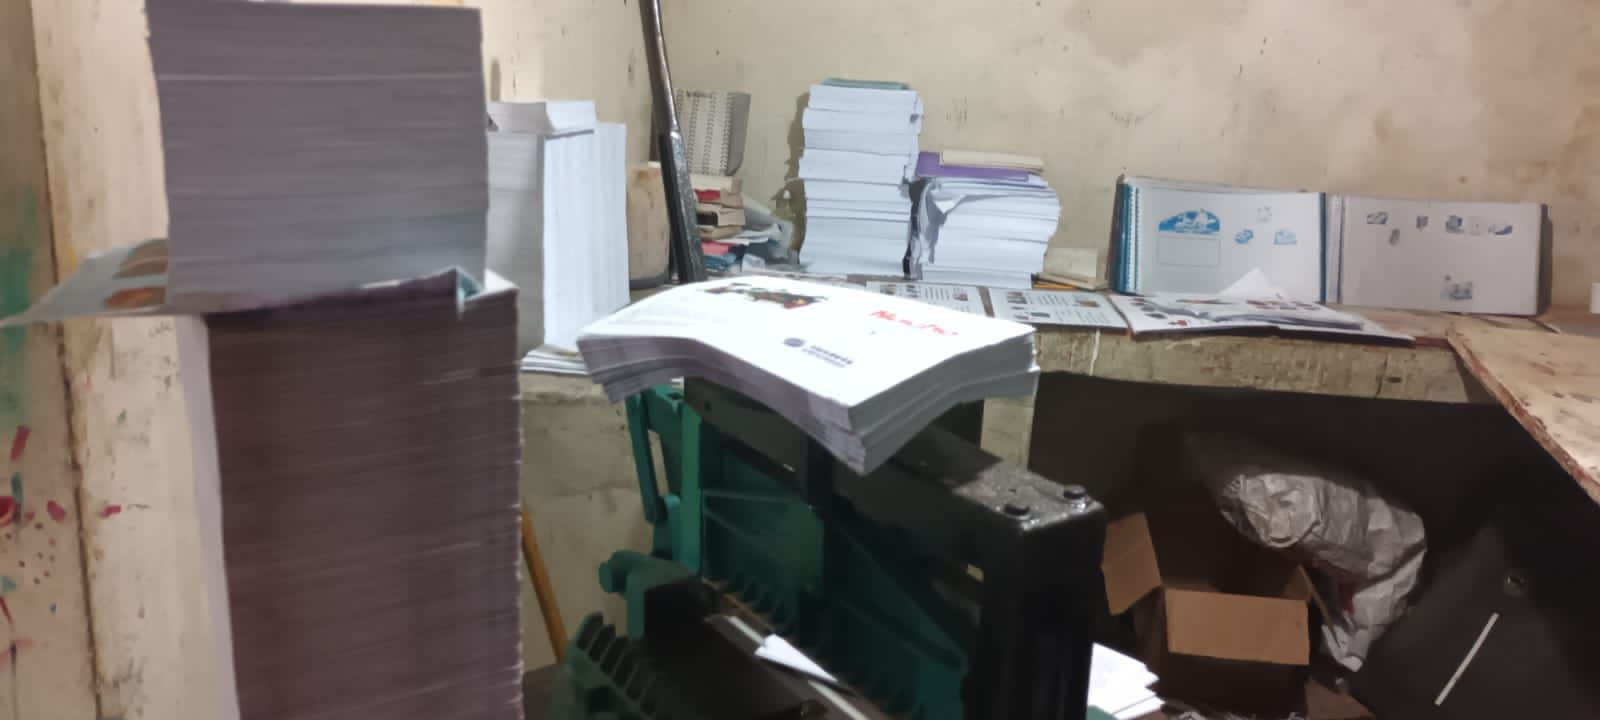 Ministerio Público somete a la justicia a dos impresores por violación a derechos de propiedad intelectual